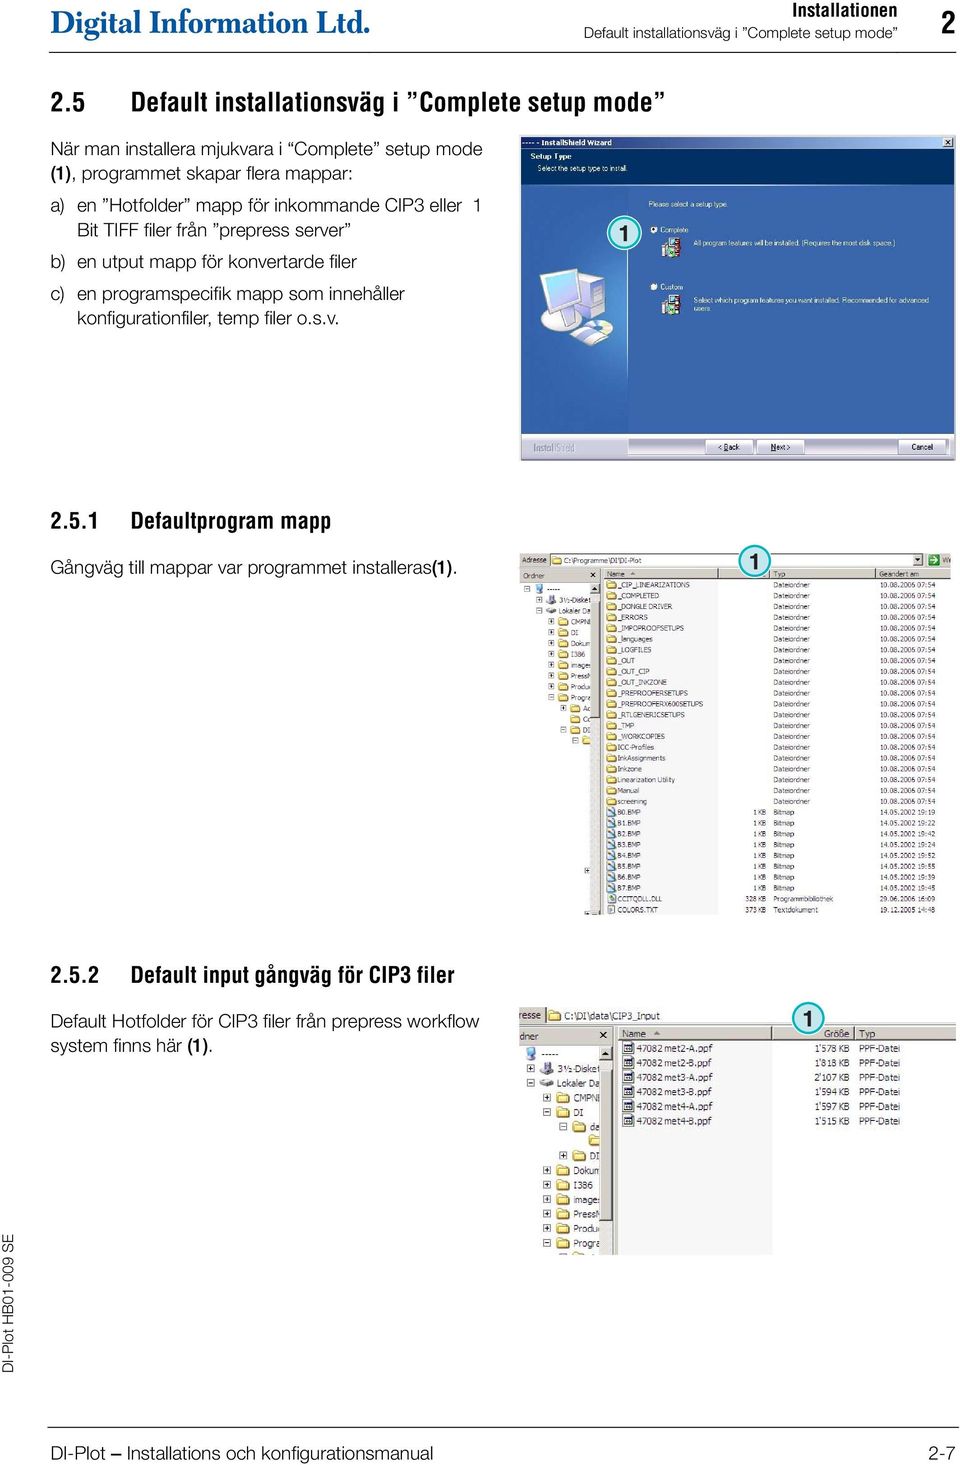 inkommande CIP3 eller Bit TIFF filer från prepress server b) en utput mapp för konvertarde filer c) en programspecifik mapp som innehåller konfigurationfiler, temp